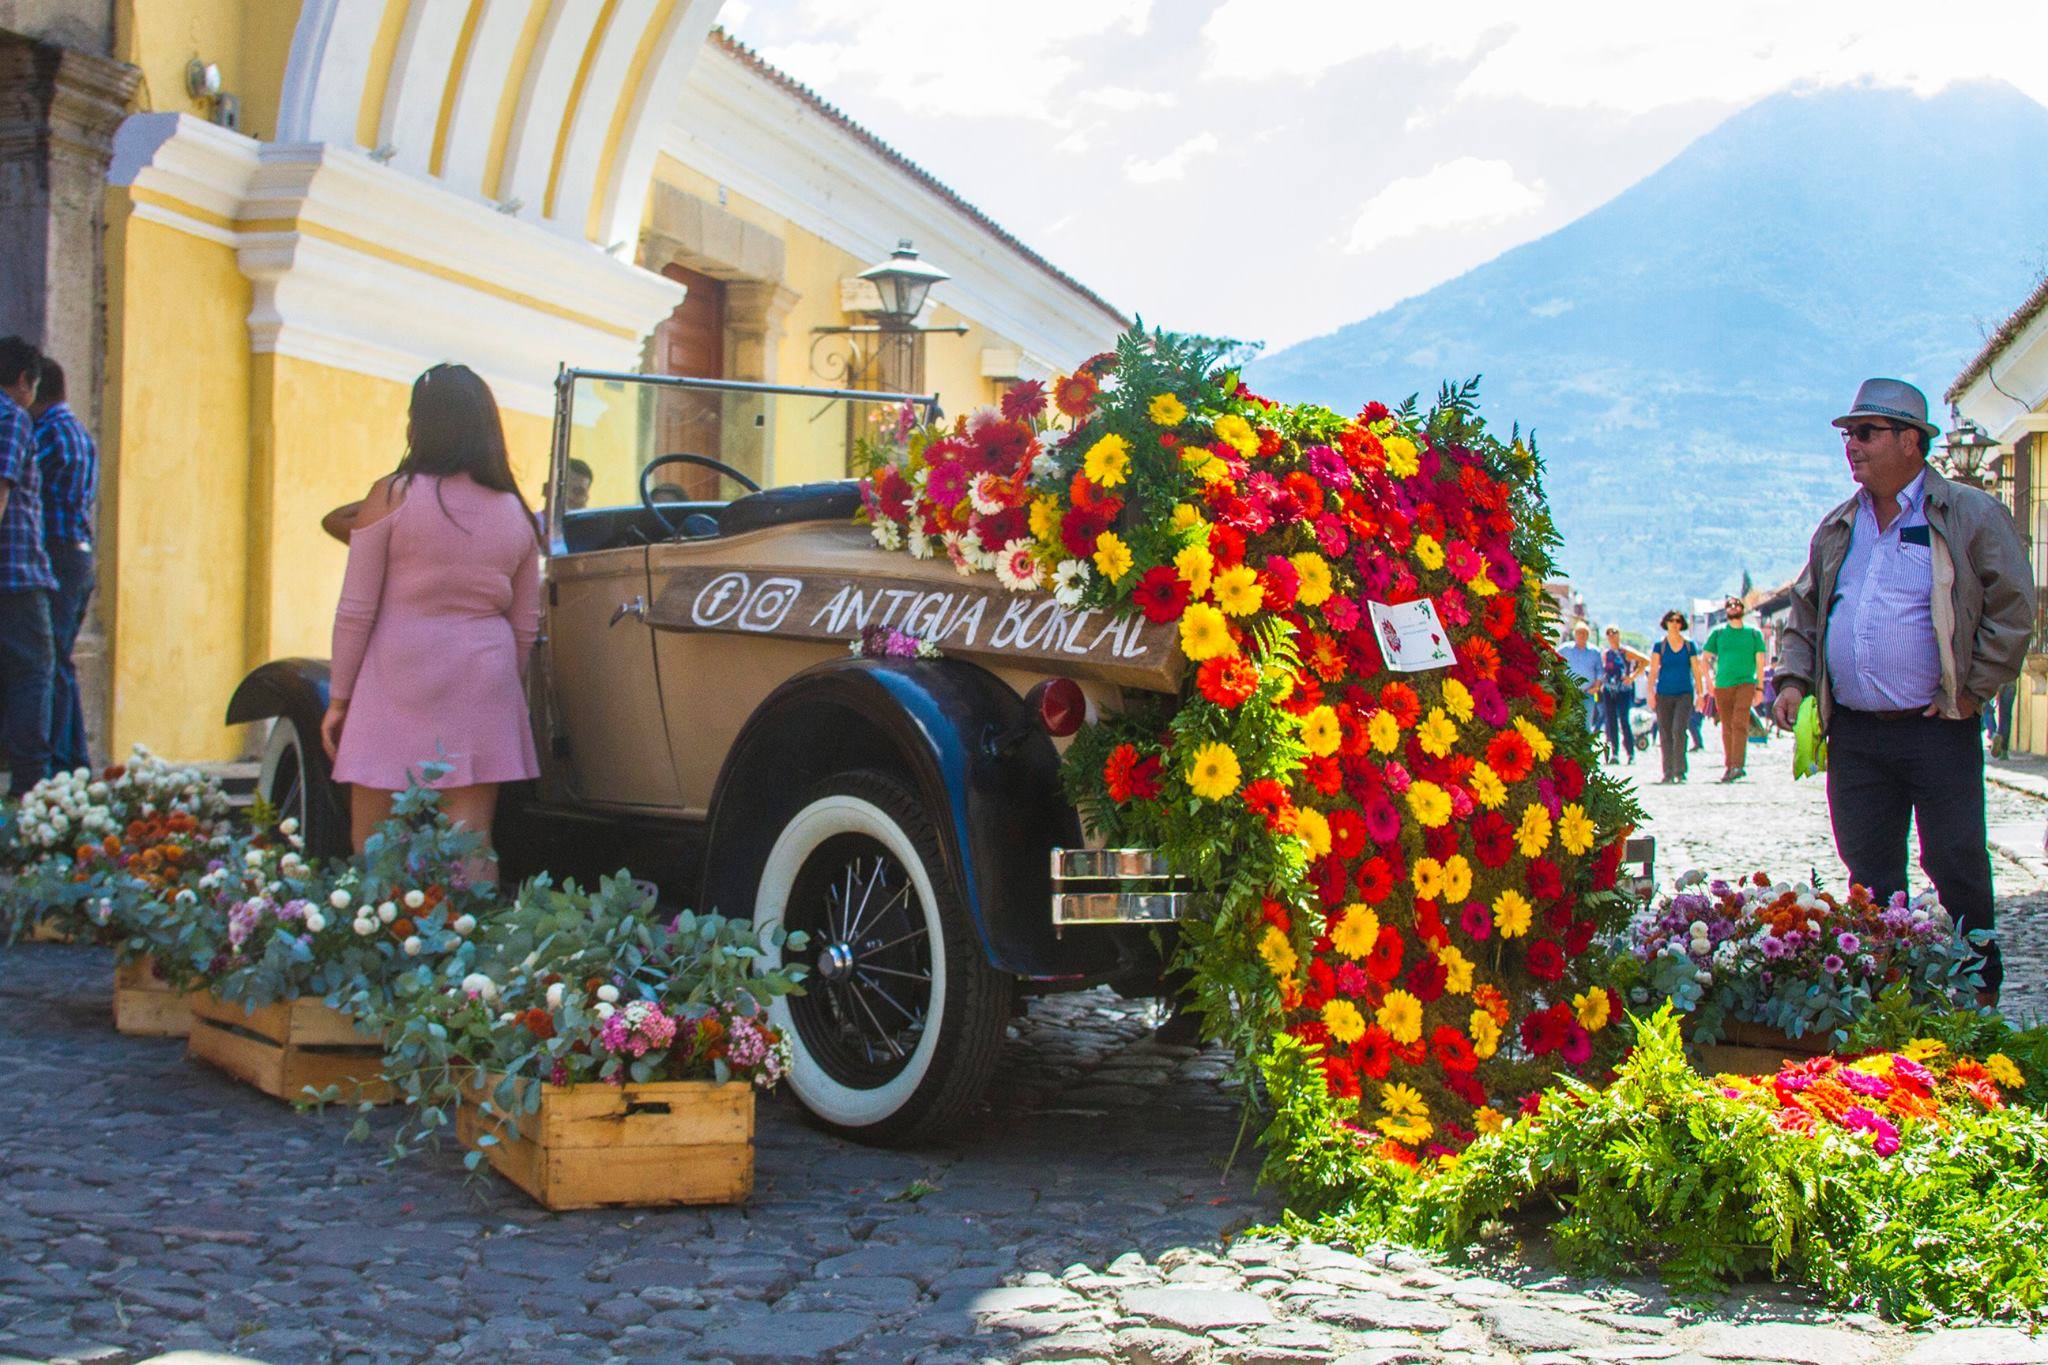 Las calles de la ciudad de Antigua Guatemala serán el escenario del tercer Festival de las Flores. (Foto Prensa Libre: Tomada de Facebook)